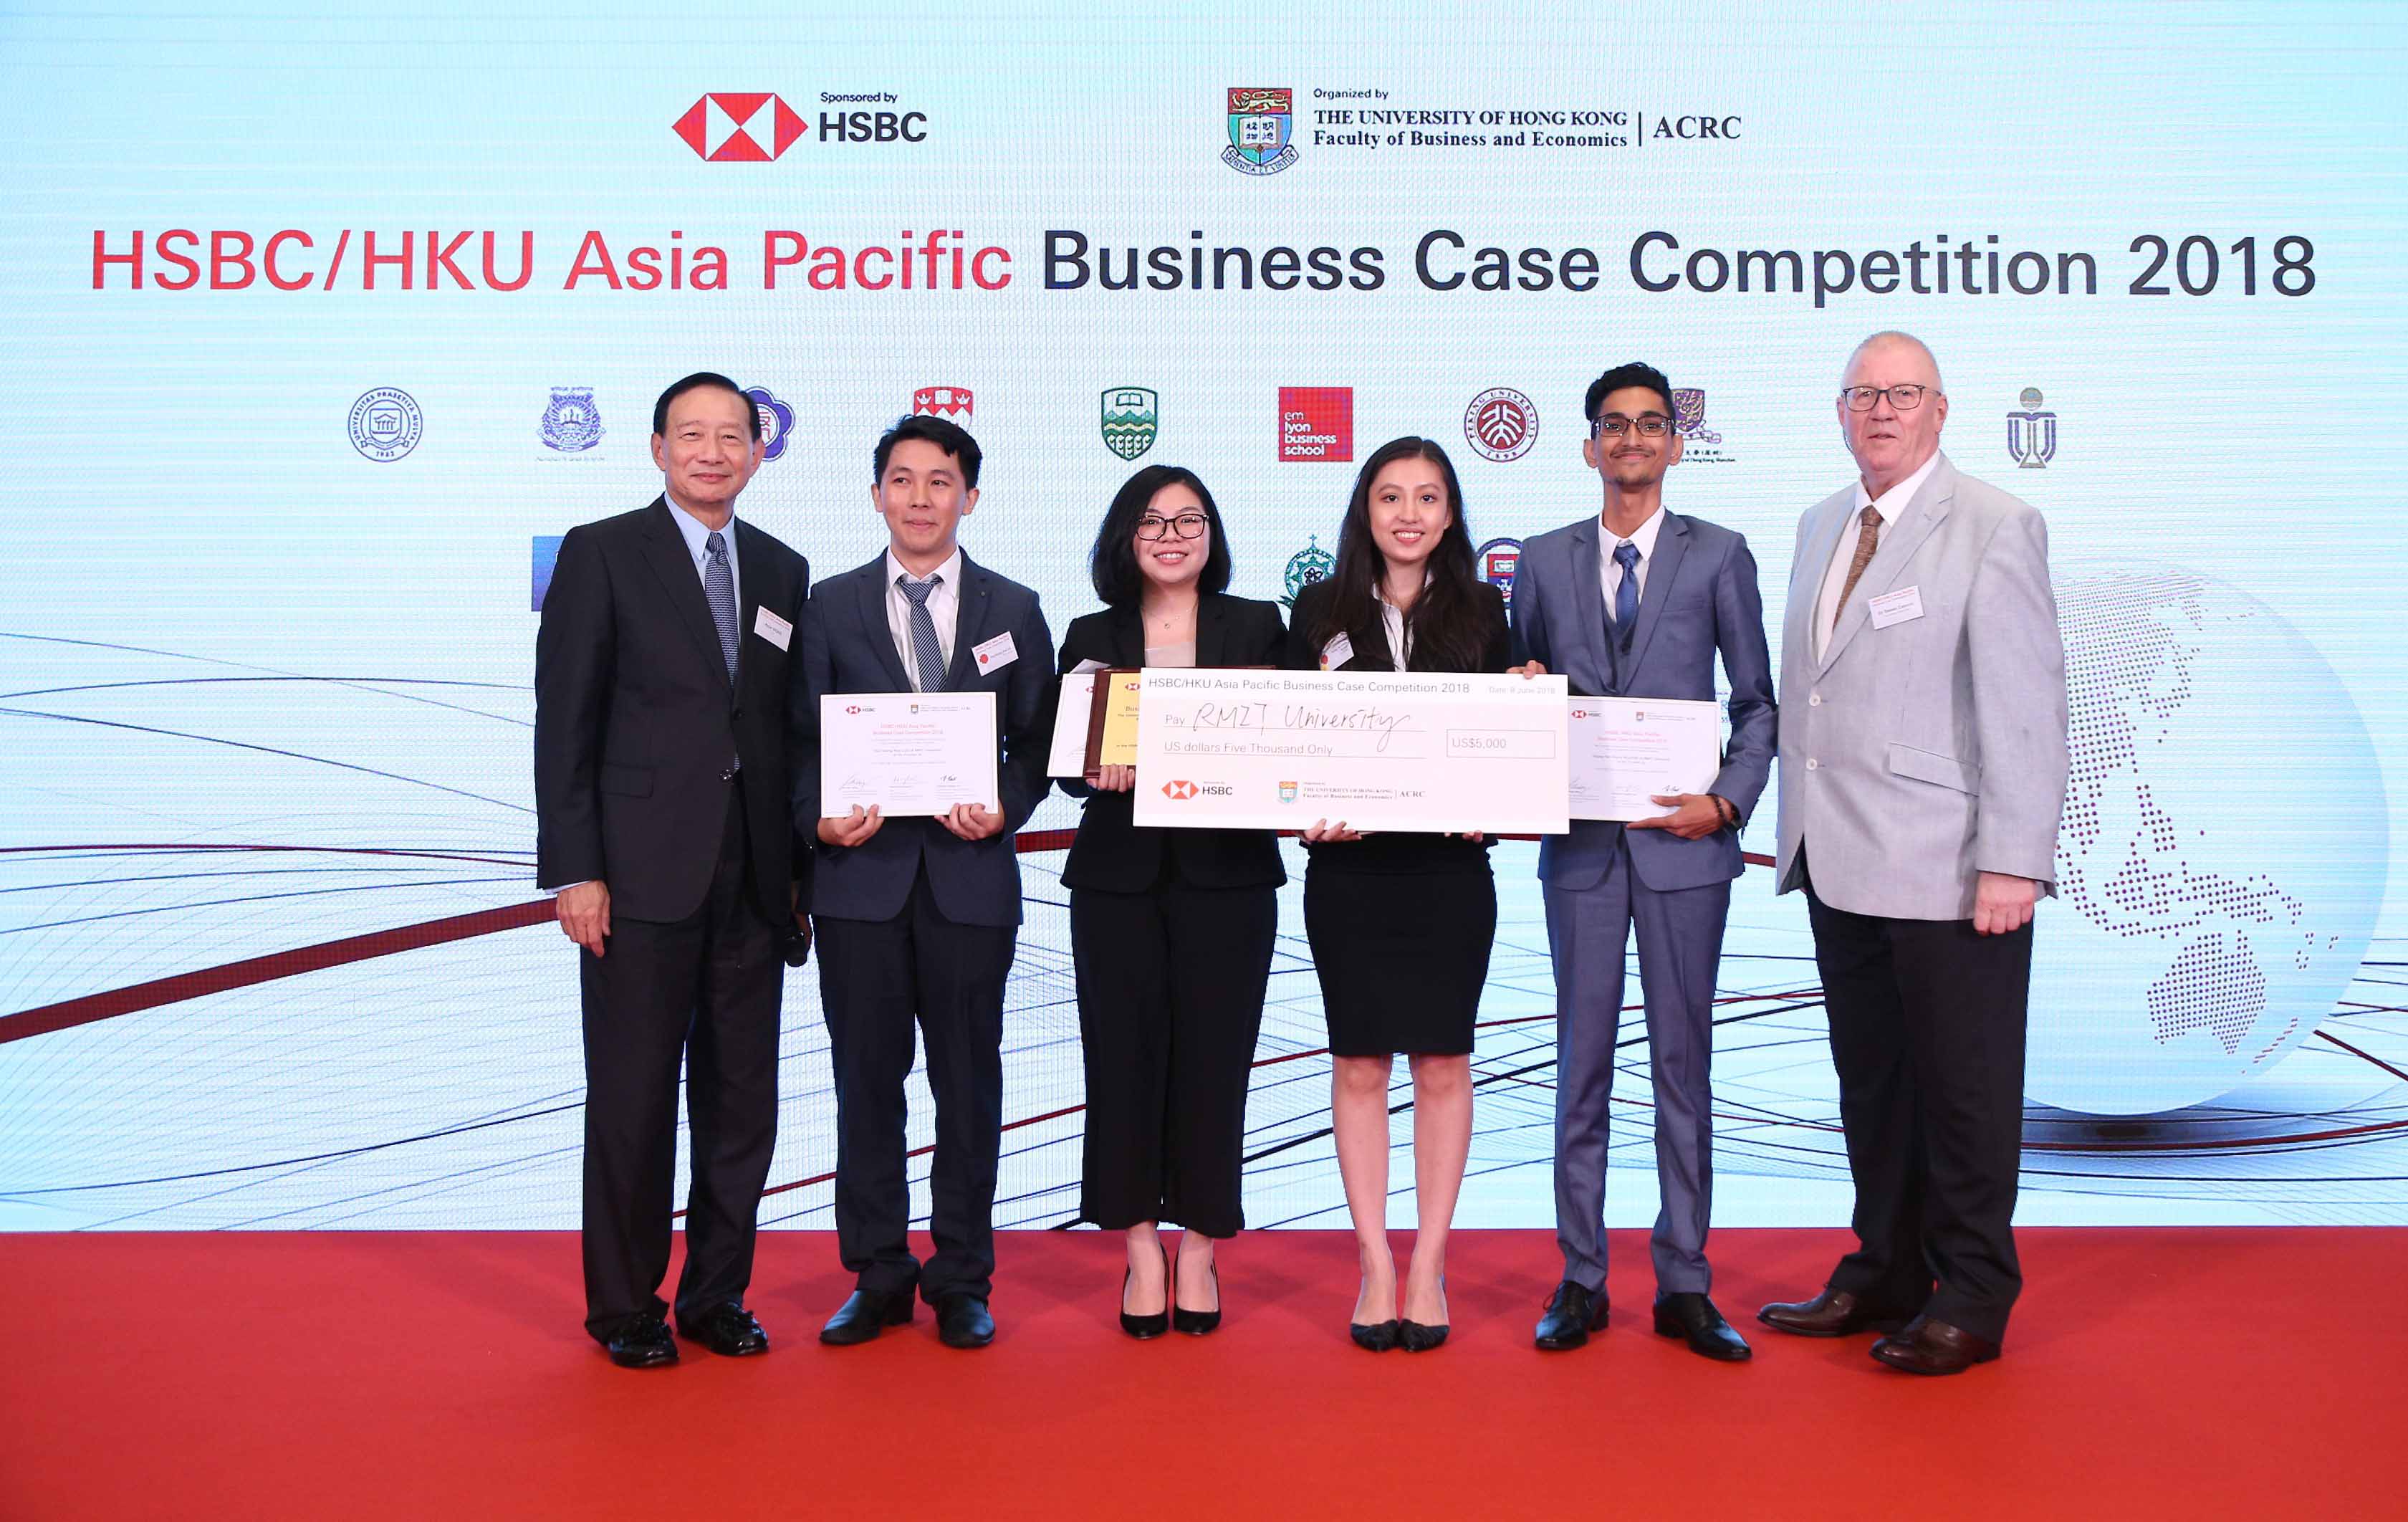 Nhóm sinh viên RMIT Việt Nam giành giải Nhì vòng chung cuộc cuộc thi giải quyết tình huống kinh doanh lớn nhất thế giới dành cho sinh viên đại học -- cuộc thi Giải quyết tình huống kinh doanh HSBC/HKU châu Á - Thái Bình Dương tại Hồng Kông.